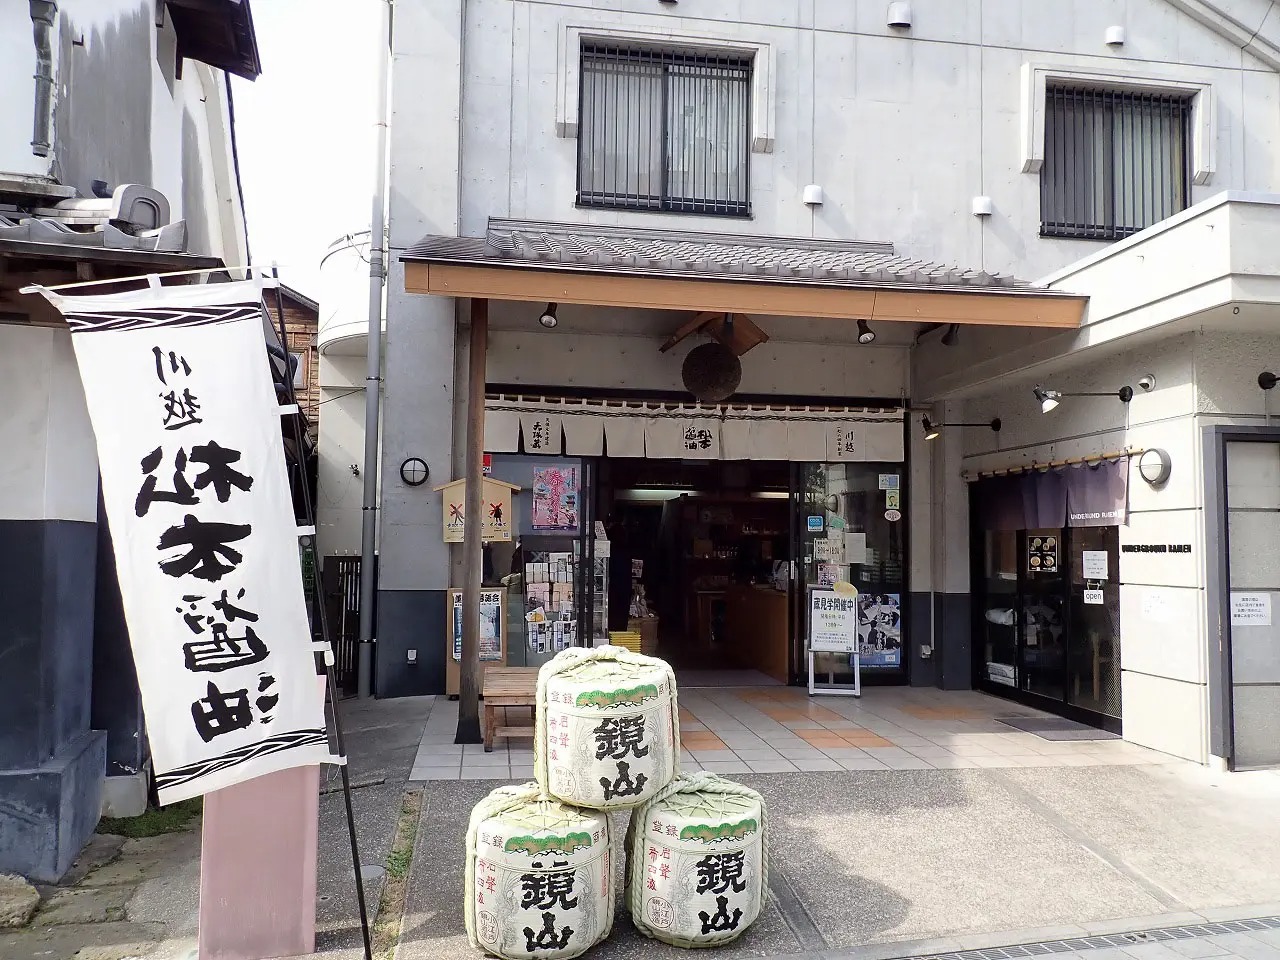 テレビで紹介された「松本醤油店」